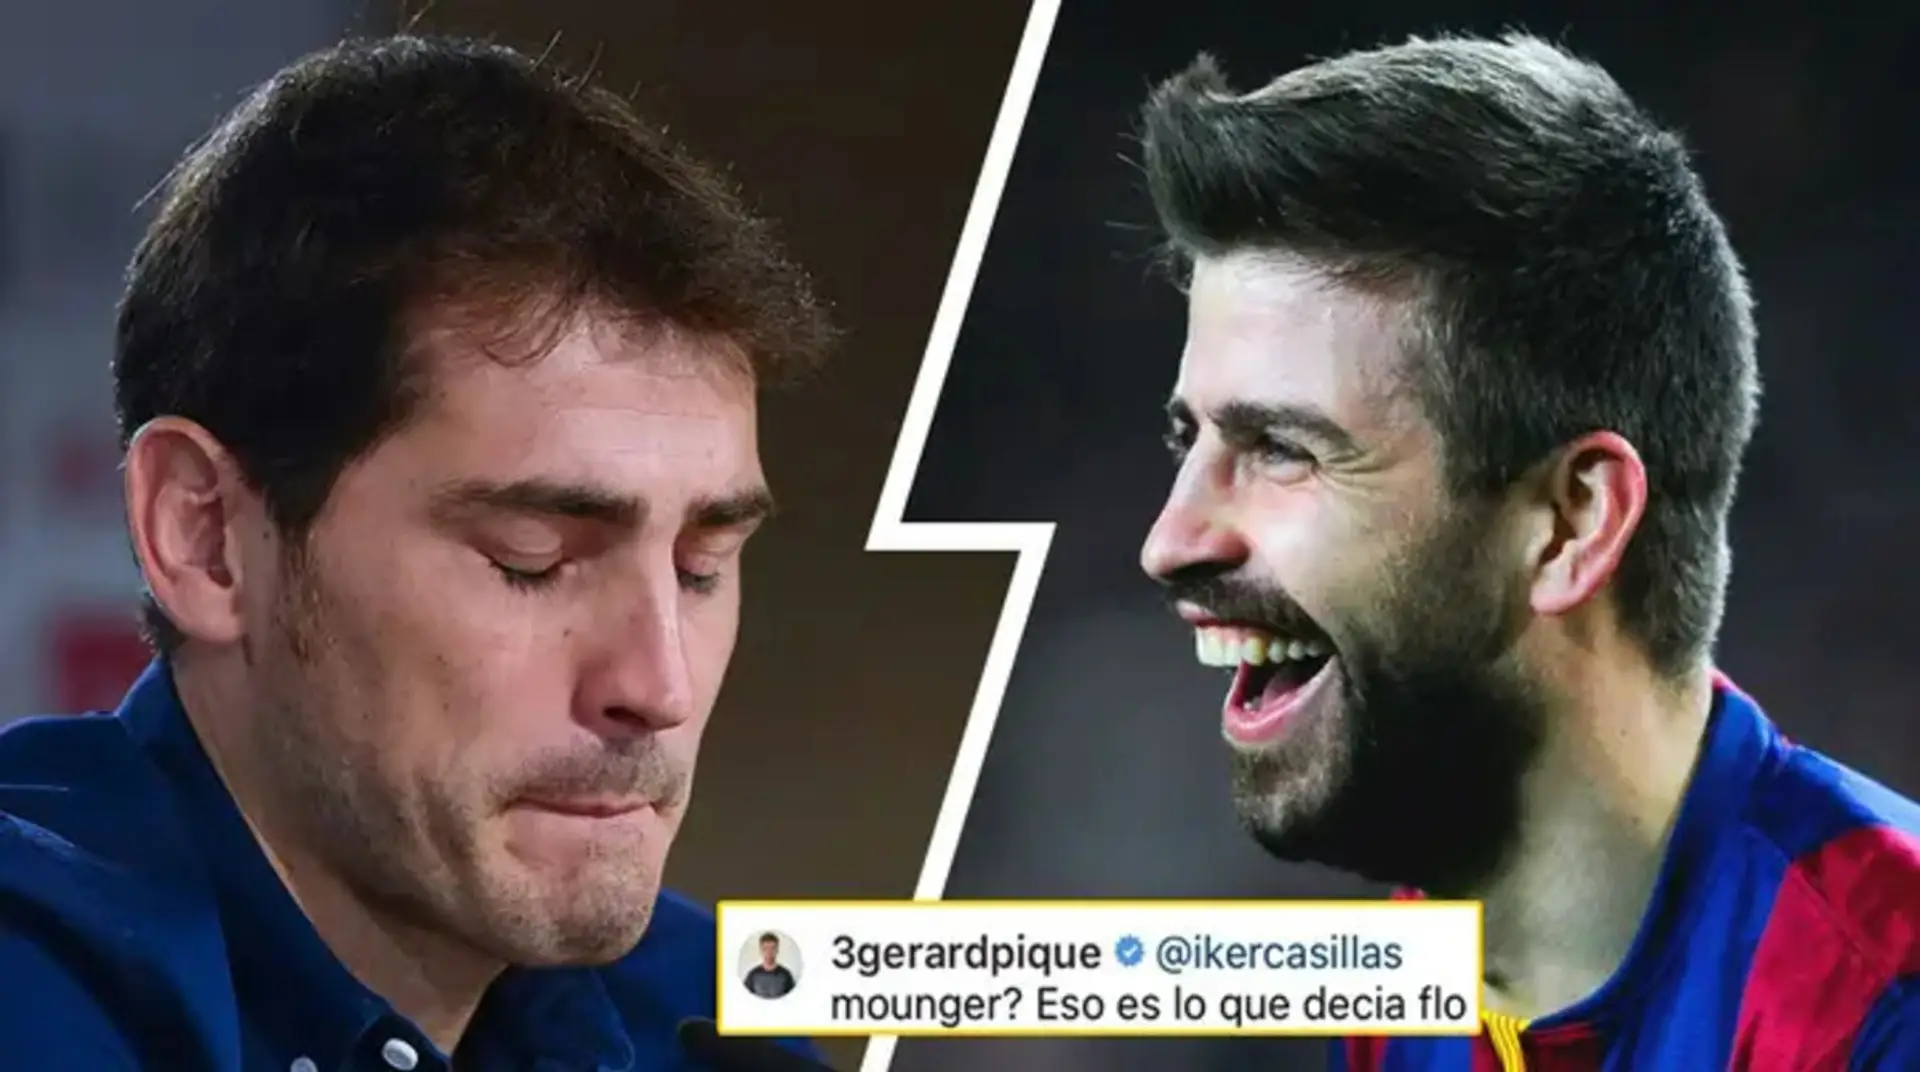 '¿Eso es lo que decía Florentino de ti?': Piqué trolea brillantemente a Casillas tras la broma fallida del portero